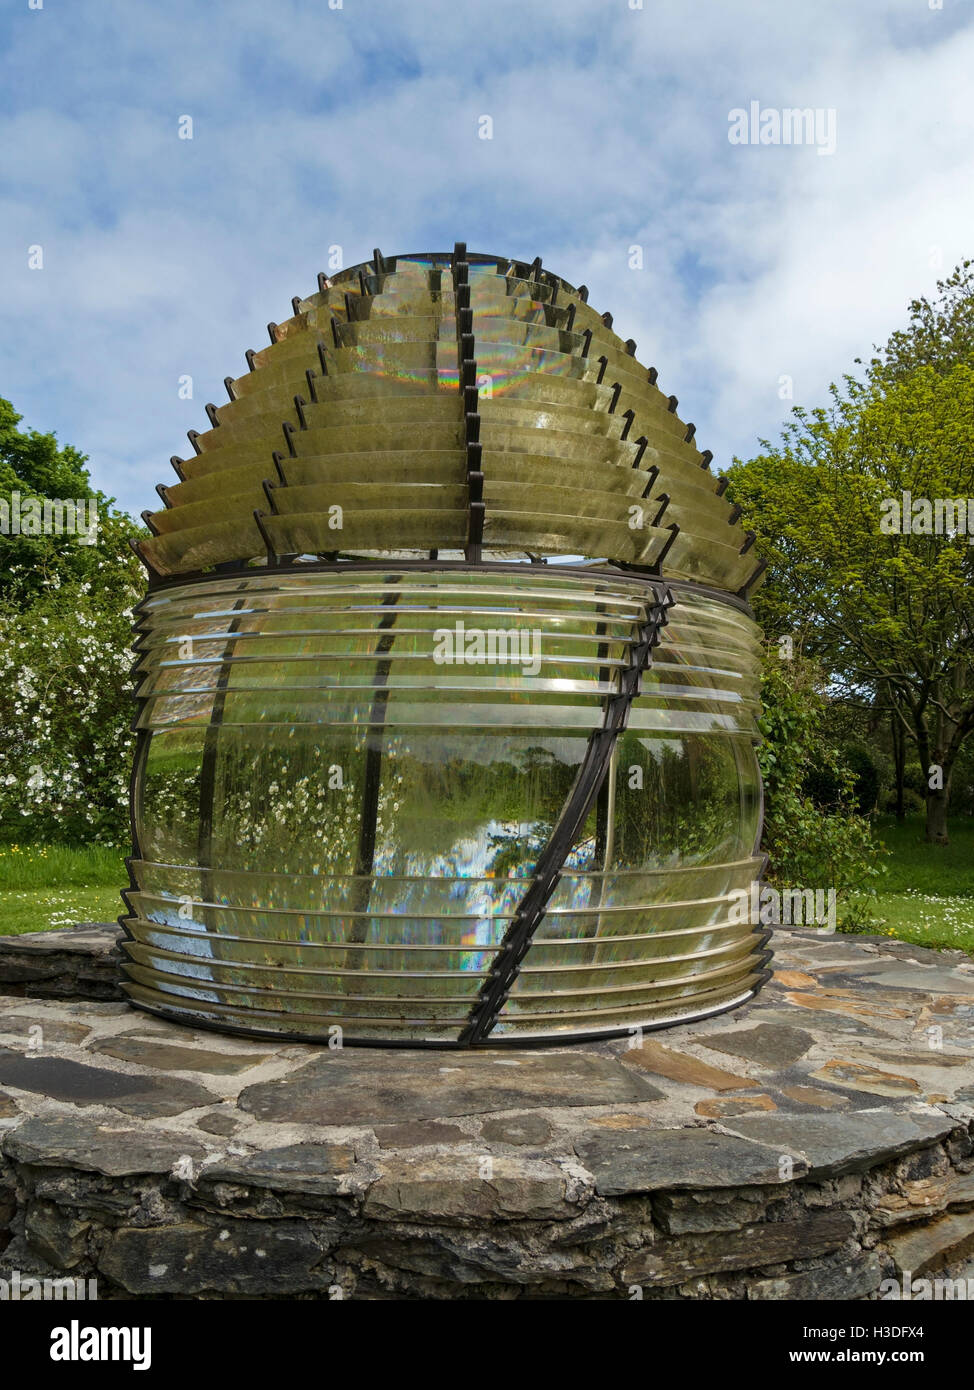 Lentille de Fresnel phare réinstallées comme une fonction de Colonsay House Gardens, à l'île de Colonsay, Ecosse, Royaume-Uni. Banque D'Images